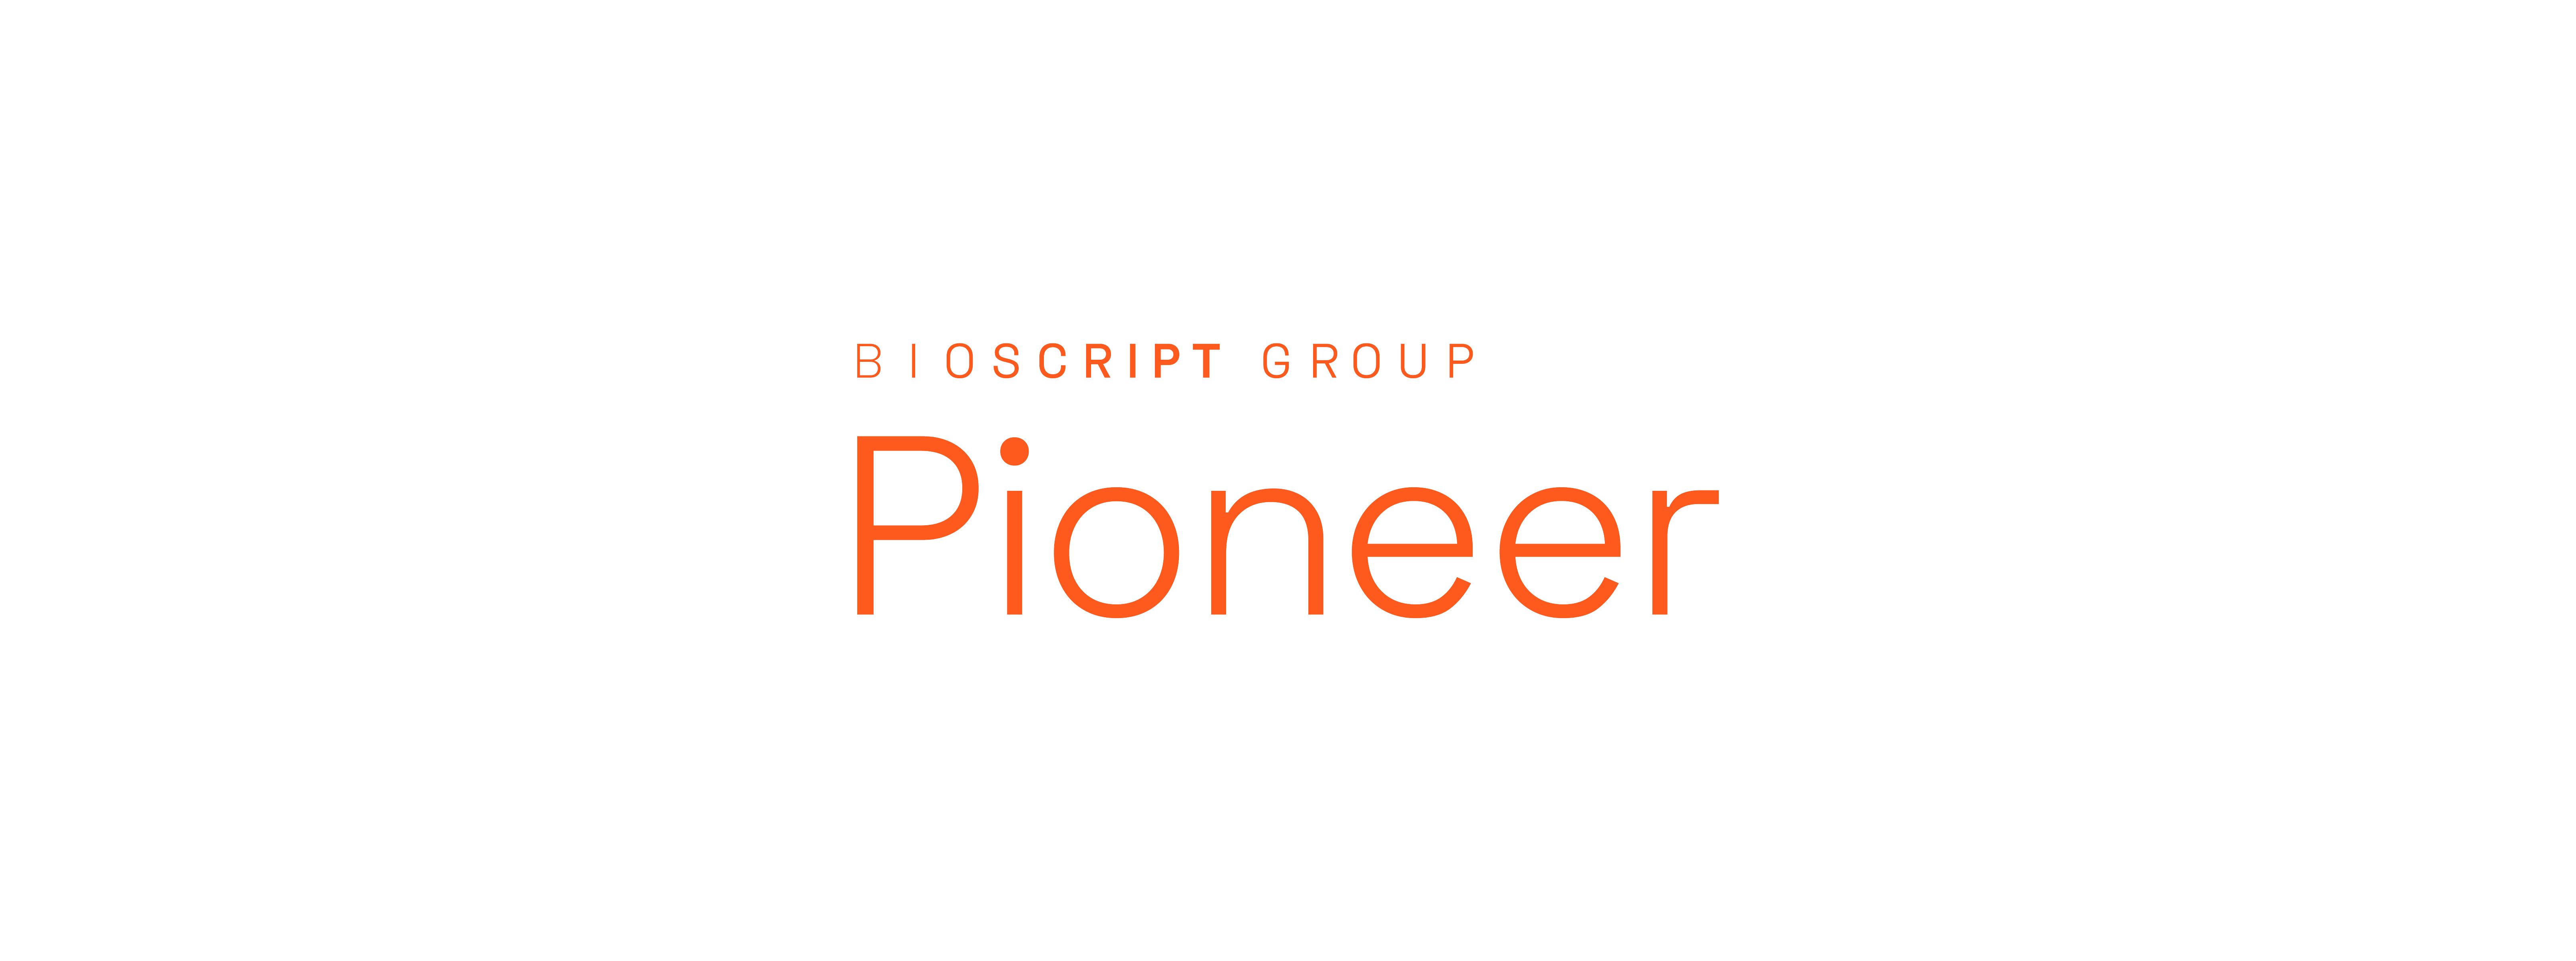 Bioscript Group Pioneer